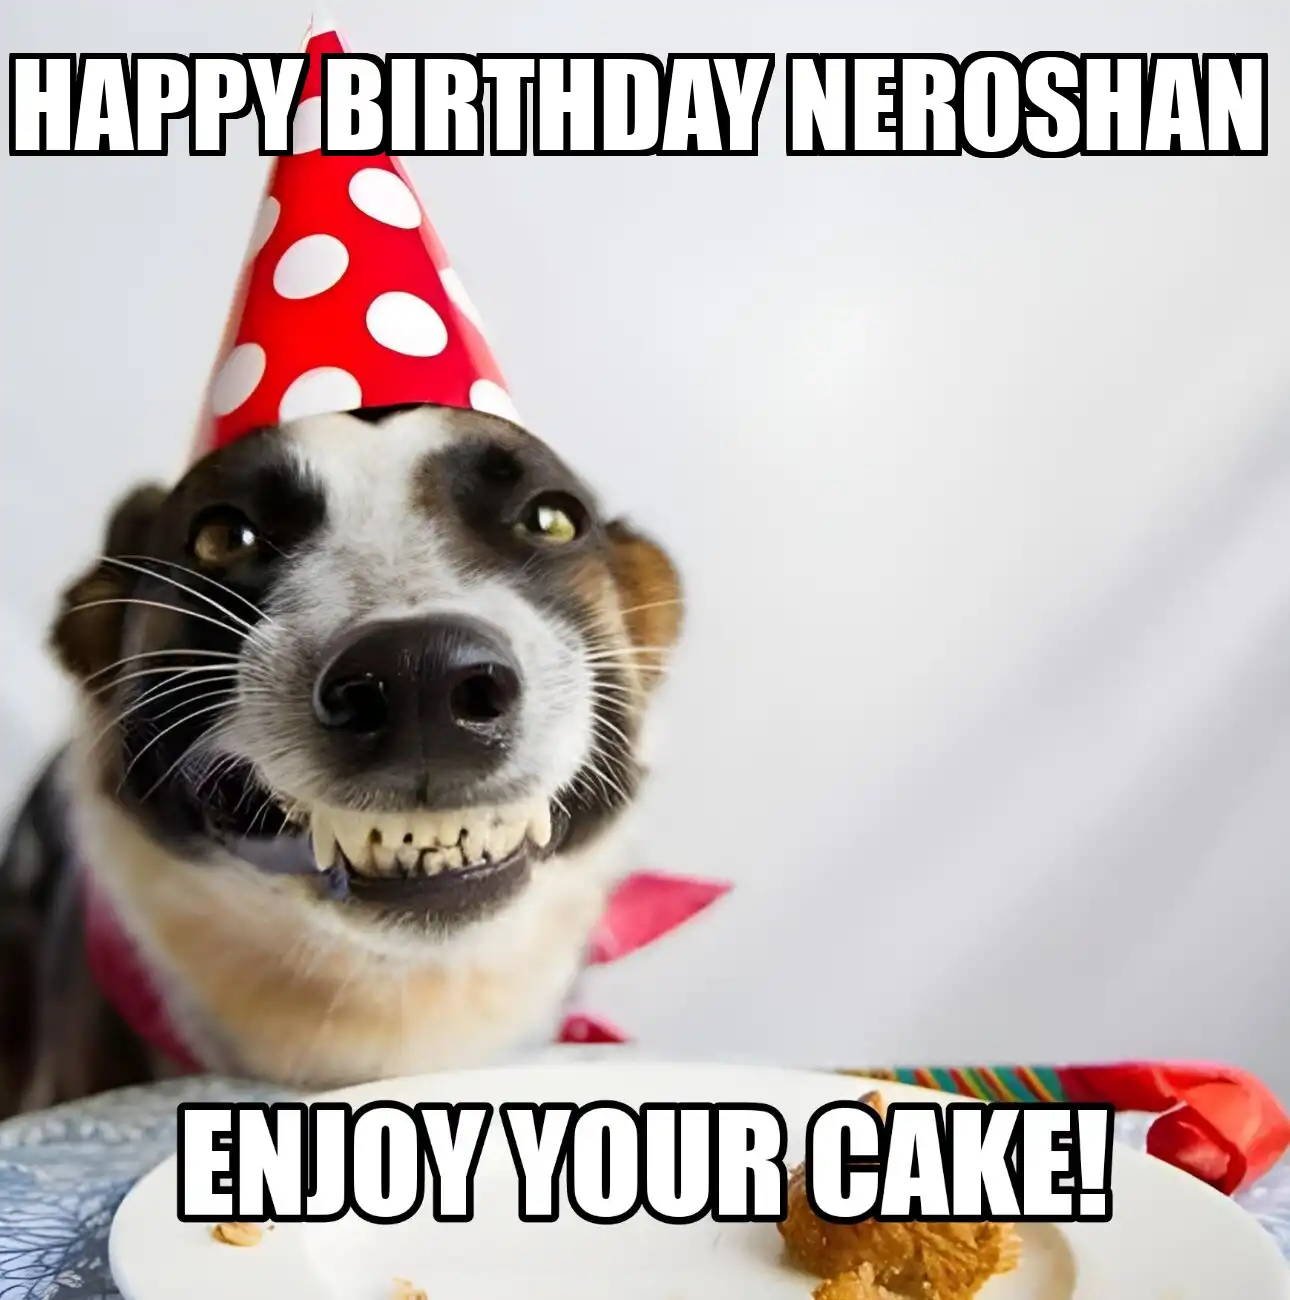 Happy Birthday Neroshan Enjoy Your Cake Dog Meme